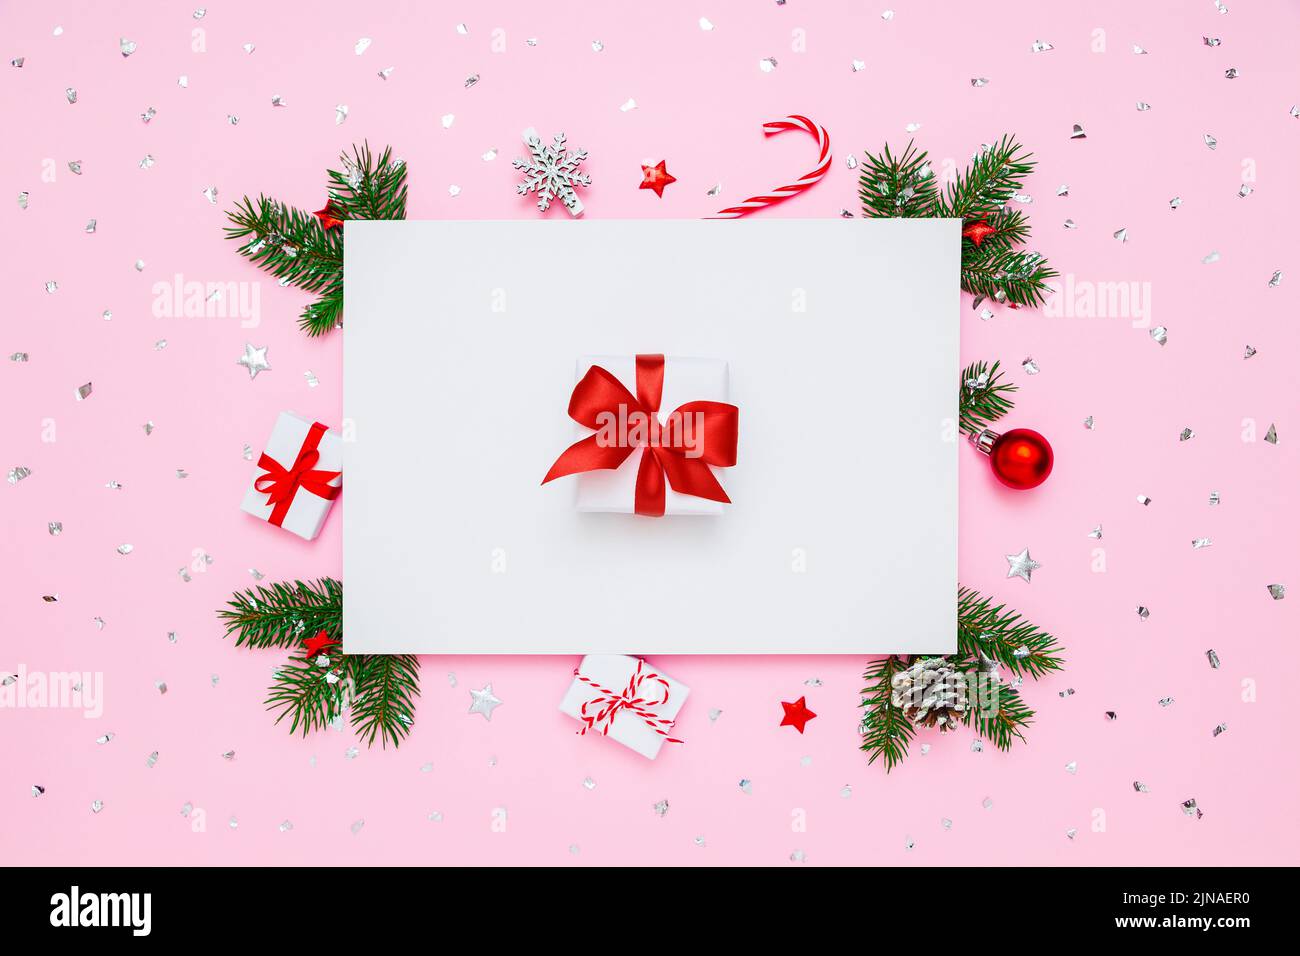 Natale, Capodanno disposizione vacanza. Scatola regalo bianca con arco rosso in cornice di rami di abete naturale e decorazioni su fondo piatto bianco e rosa pastello Foto Stock